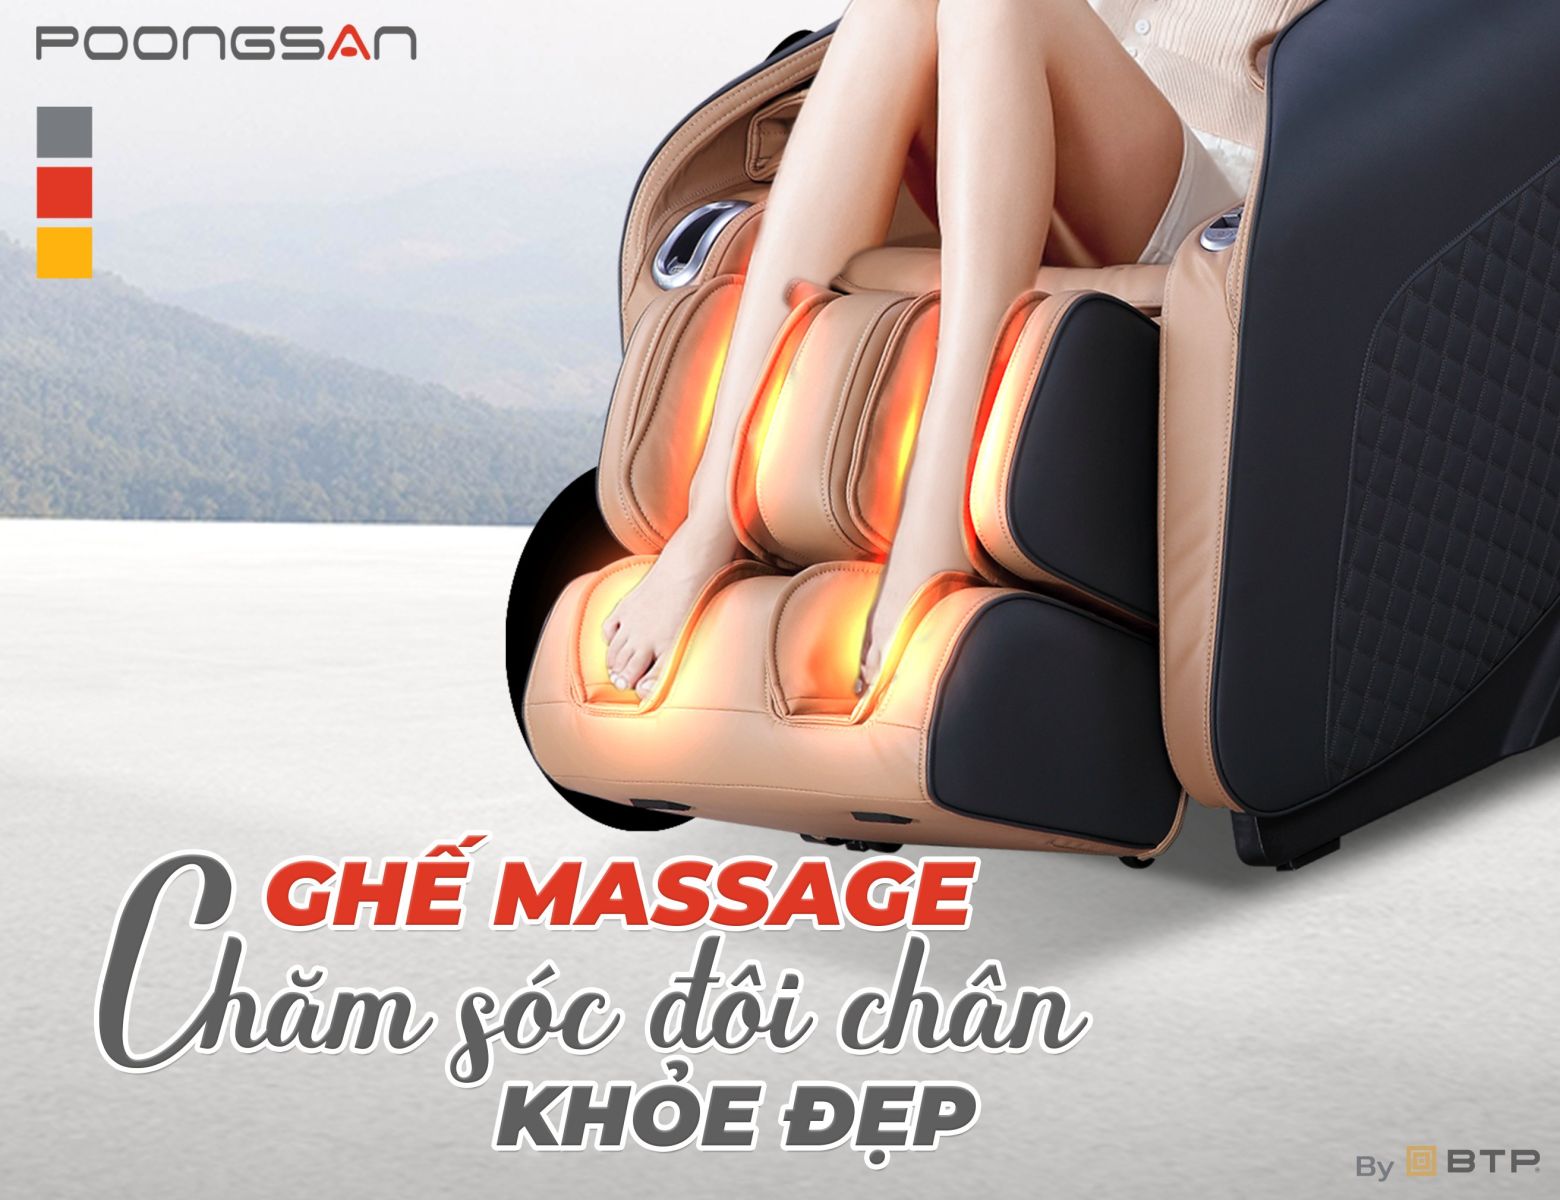 Ghế massage Poongsan chăm sóc đôi chân khỏe đẹp hơn mỗi ngày